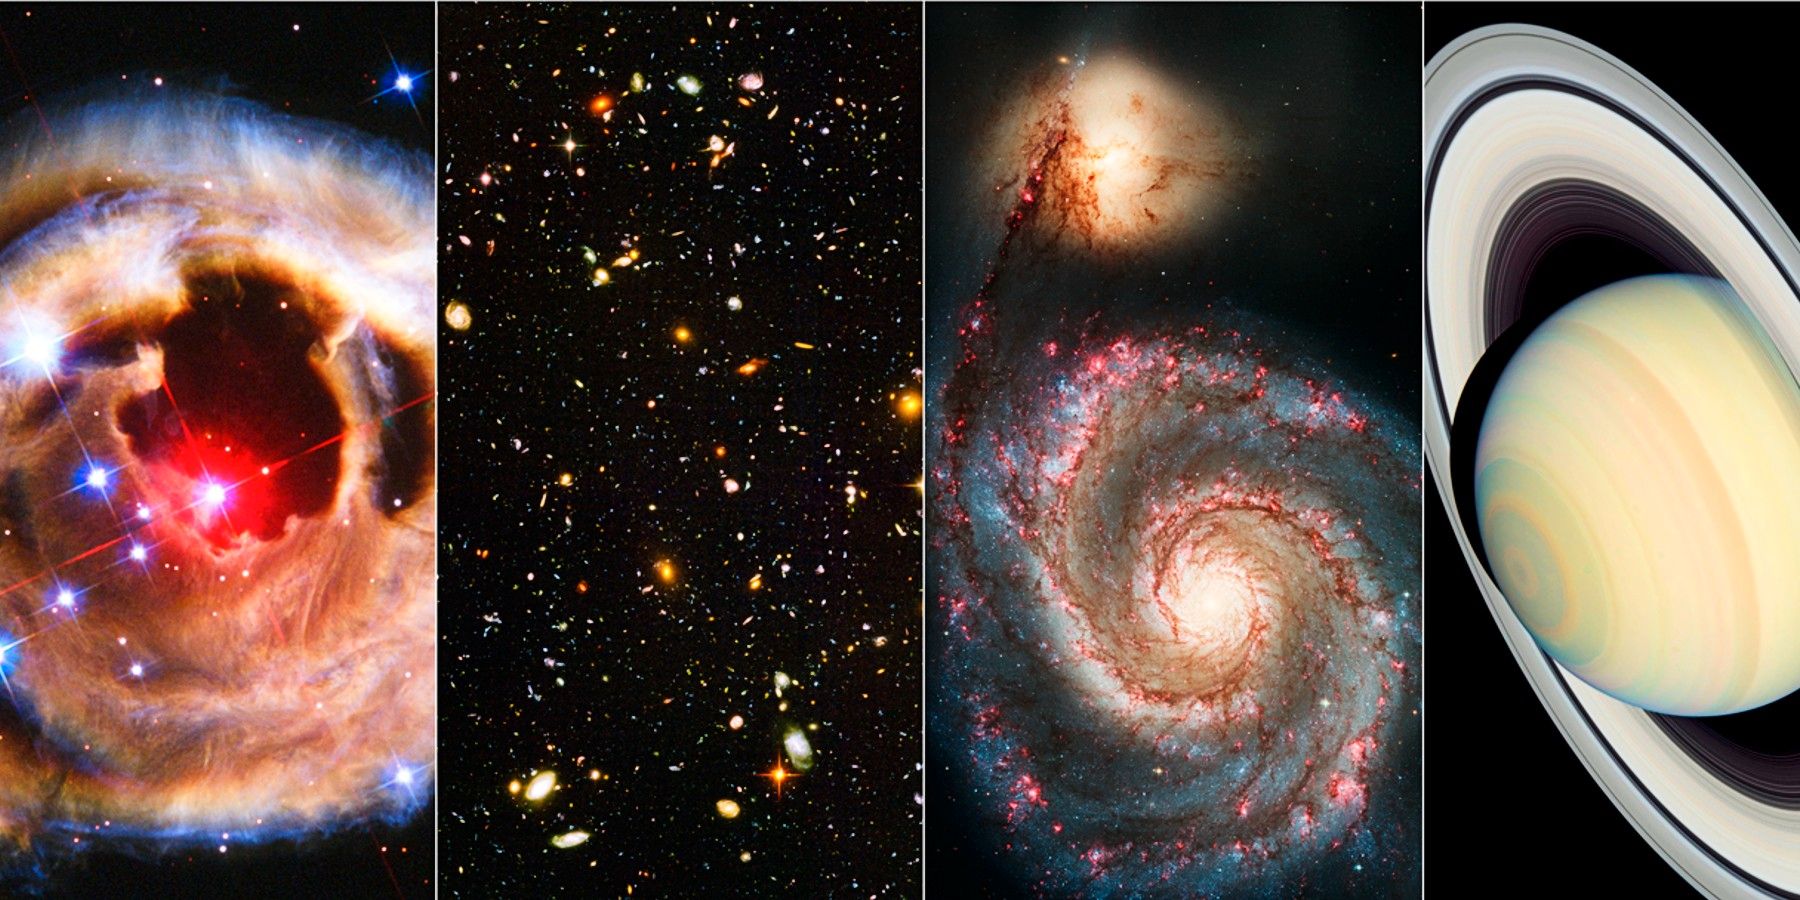 La NASA honra el vigésimo aniversario de la cámara Hubble con imágenes impresionantes